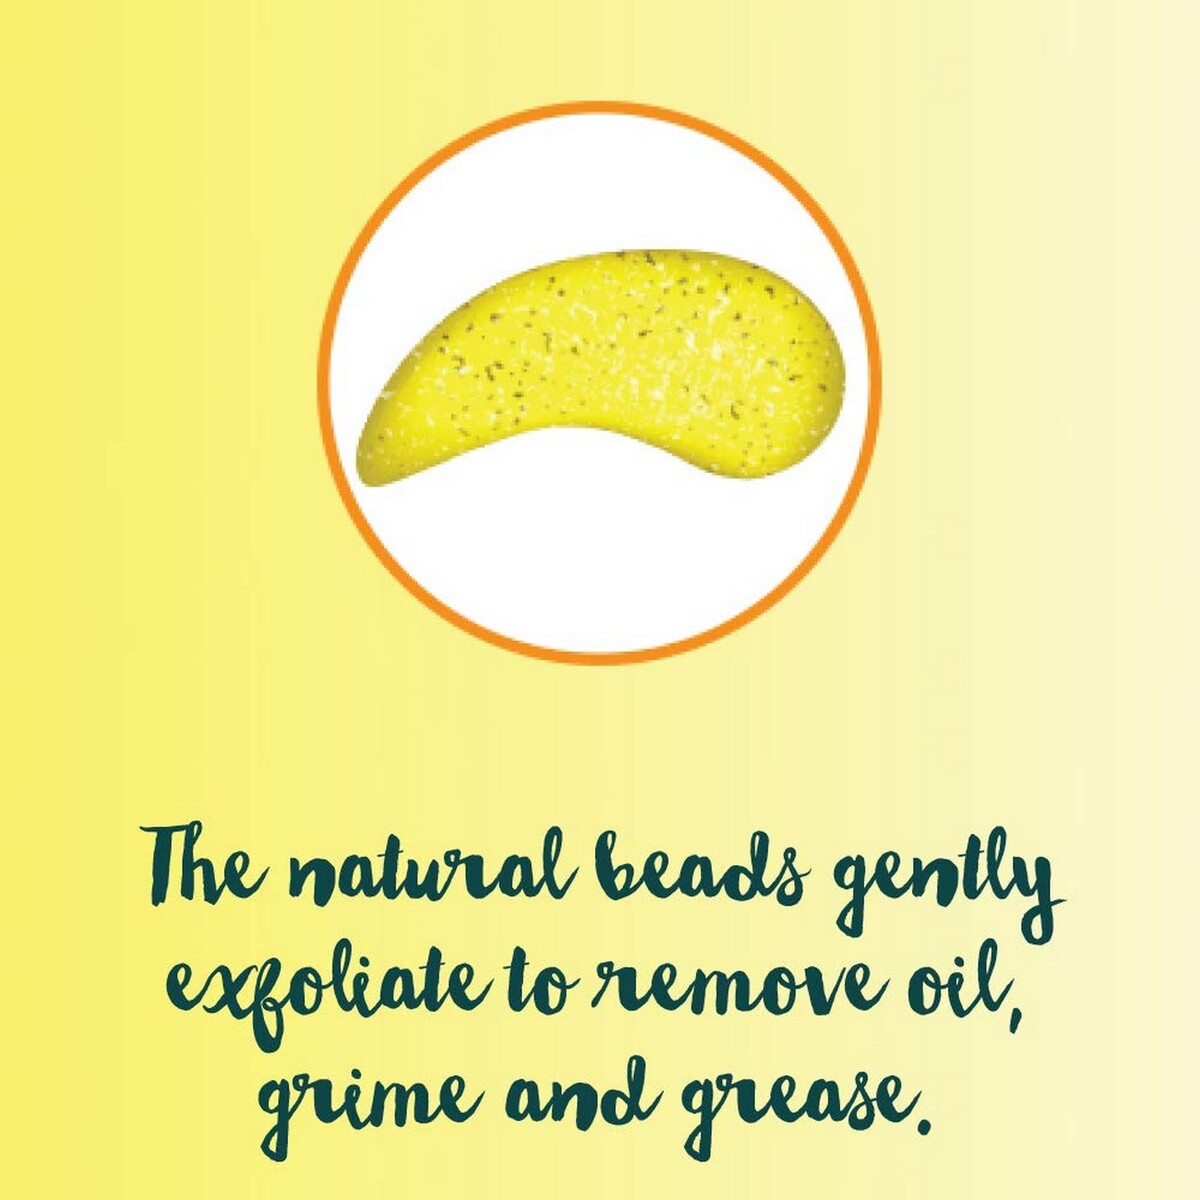 Himalaya Face Wash  Oil Clear Lemon 50ml